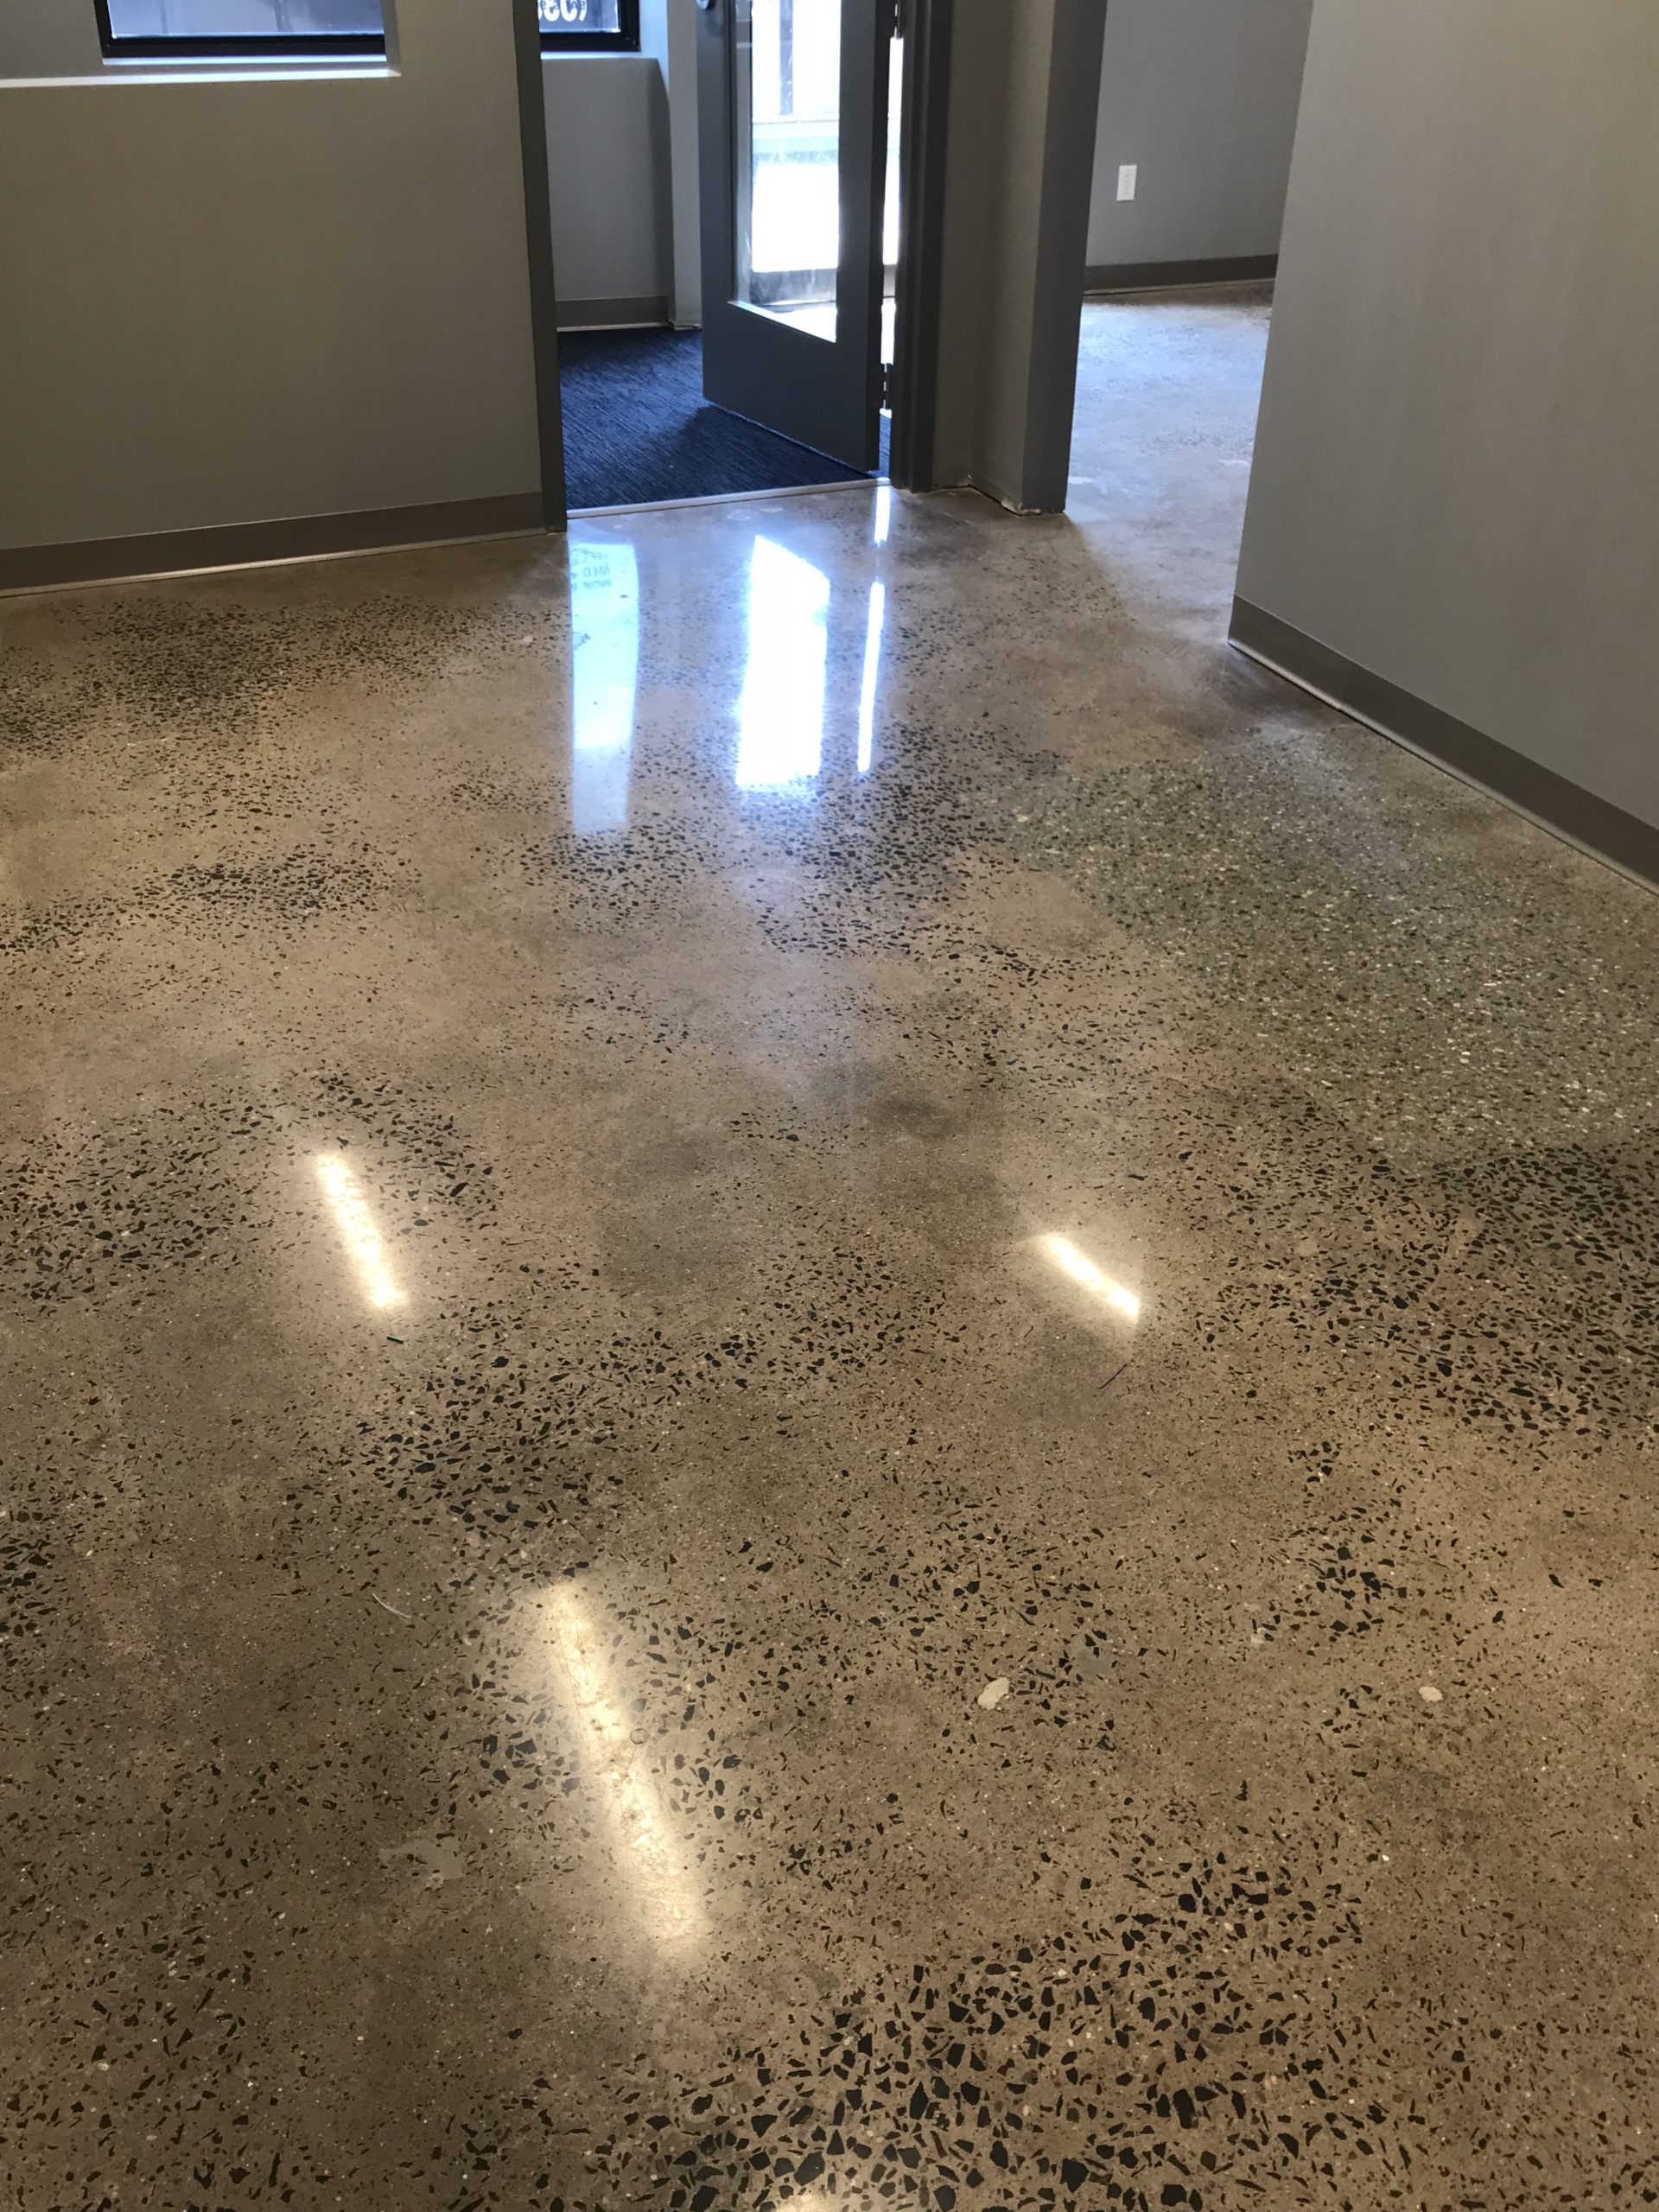 Polished Concrete Flooring Contractors in CT - Everlast Industrial Flooring